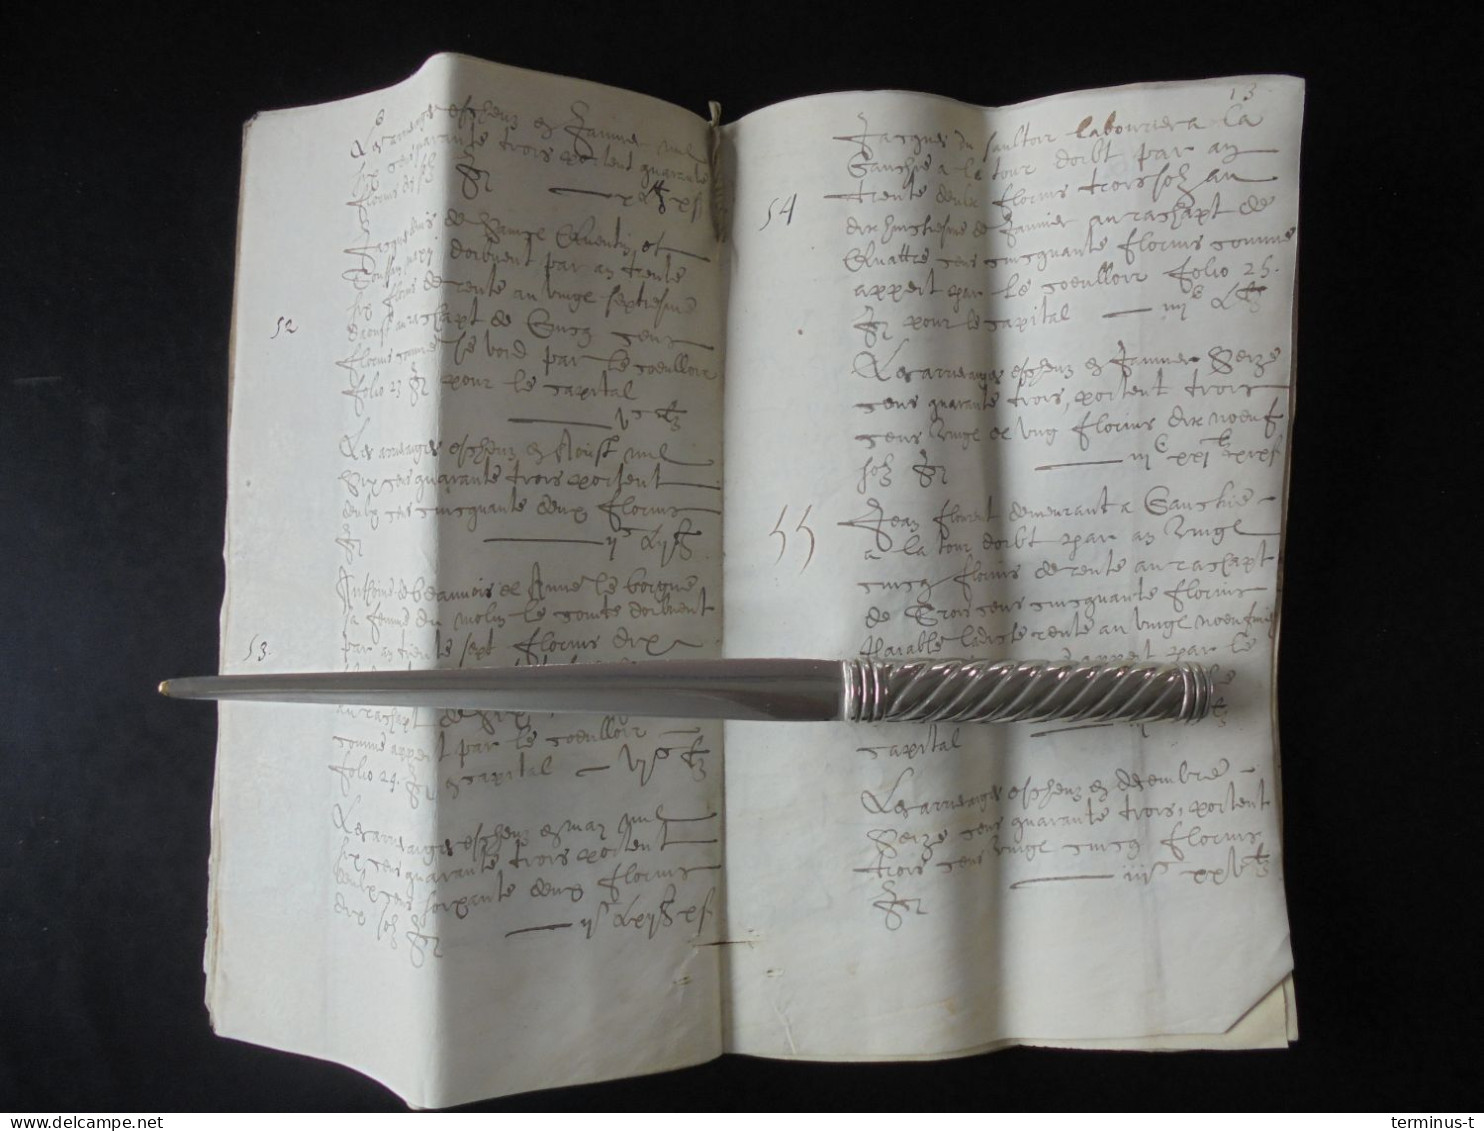 Manuscript AIRE-SUR-LA-LYS Anno 1643 (de Cavarel) - Manuscrits